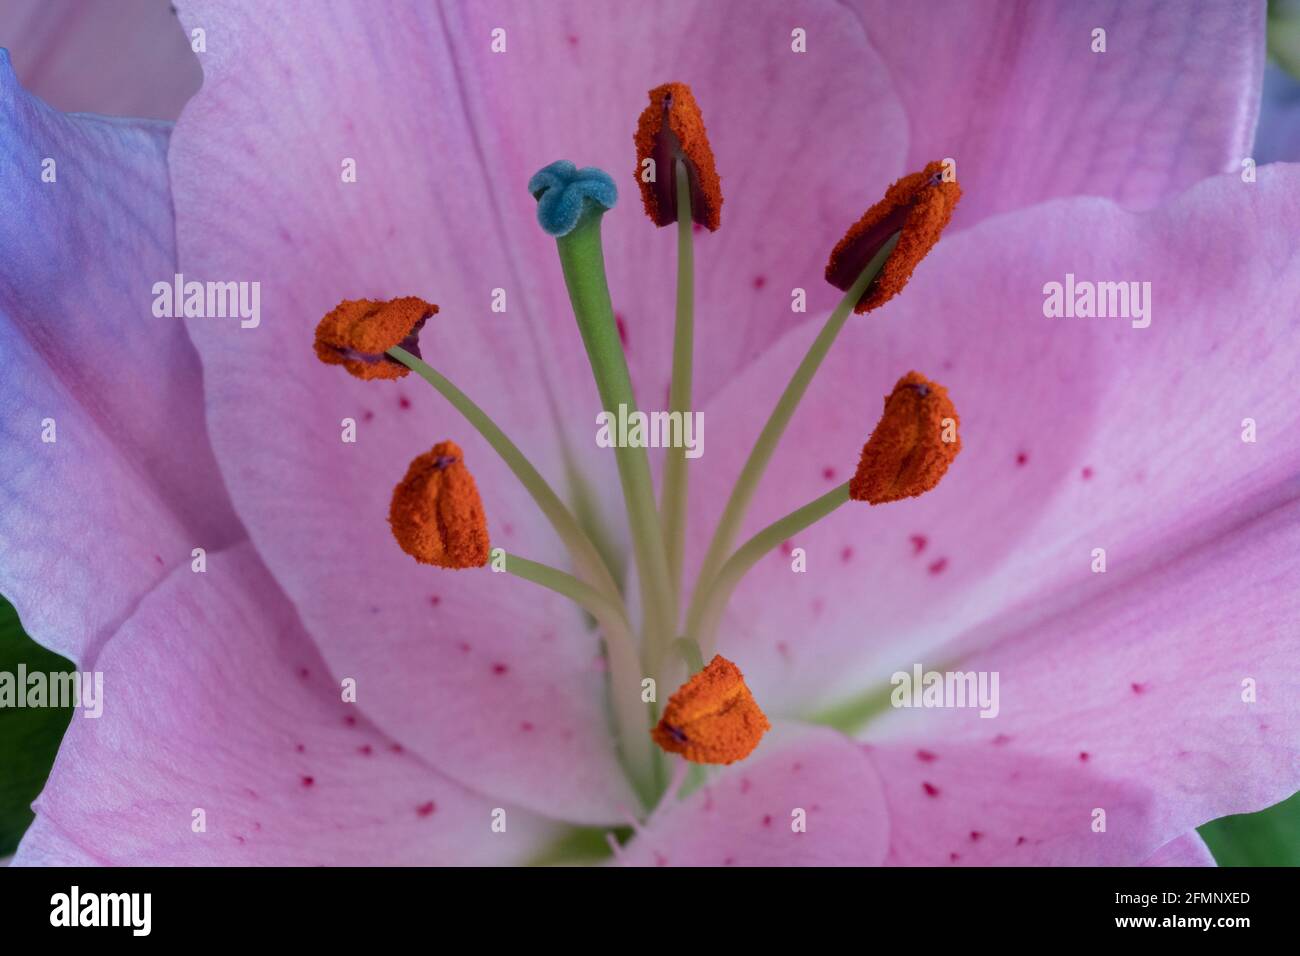 Primo piano di un fiore di giglio che mostra lo stigma, lo stile, gli stami e i filamenti Foto Stock